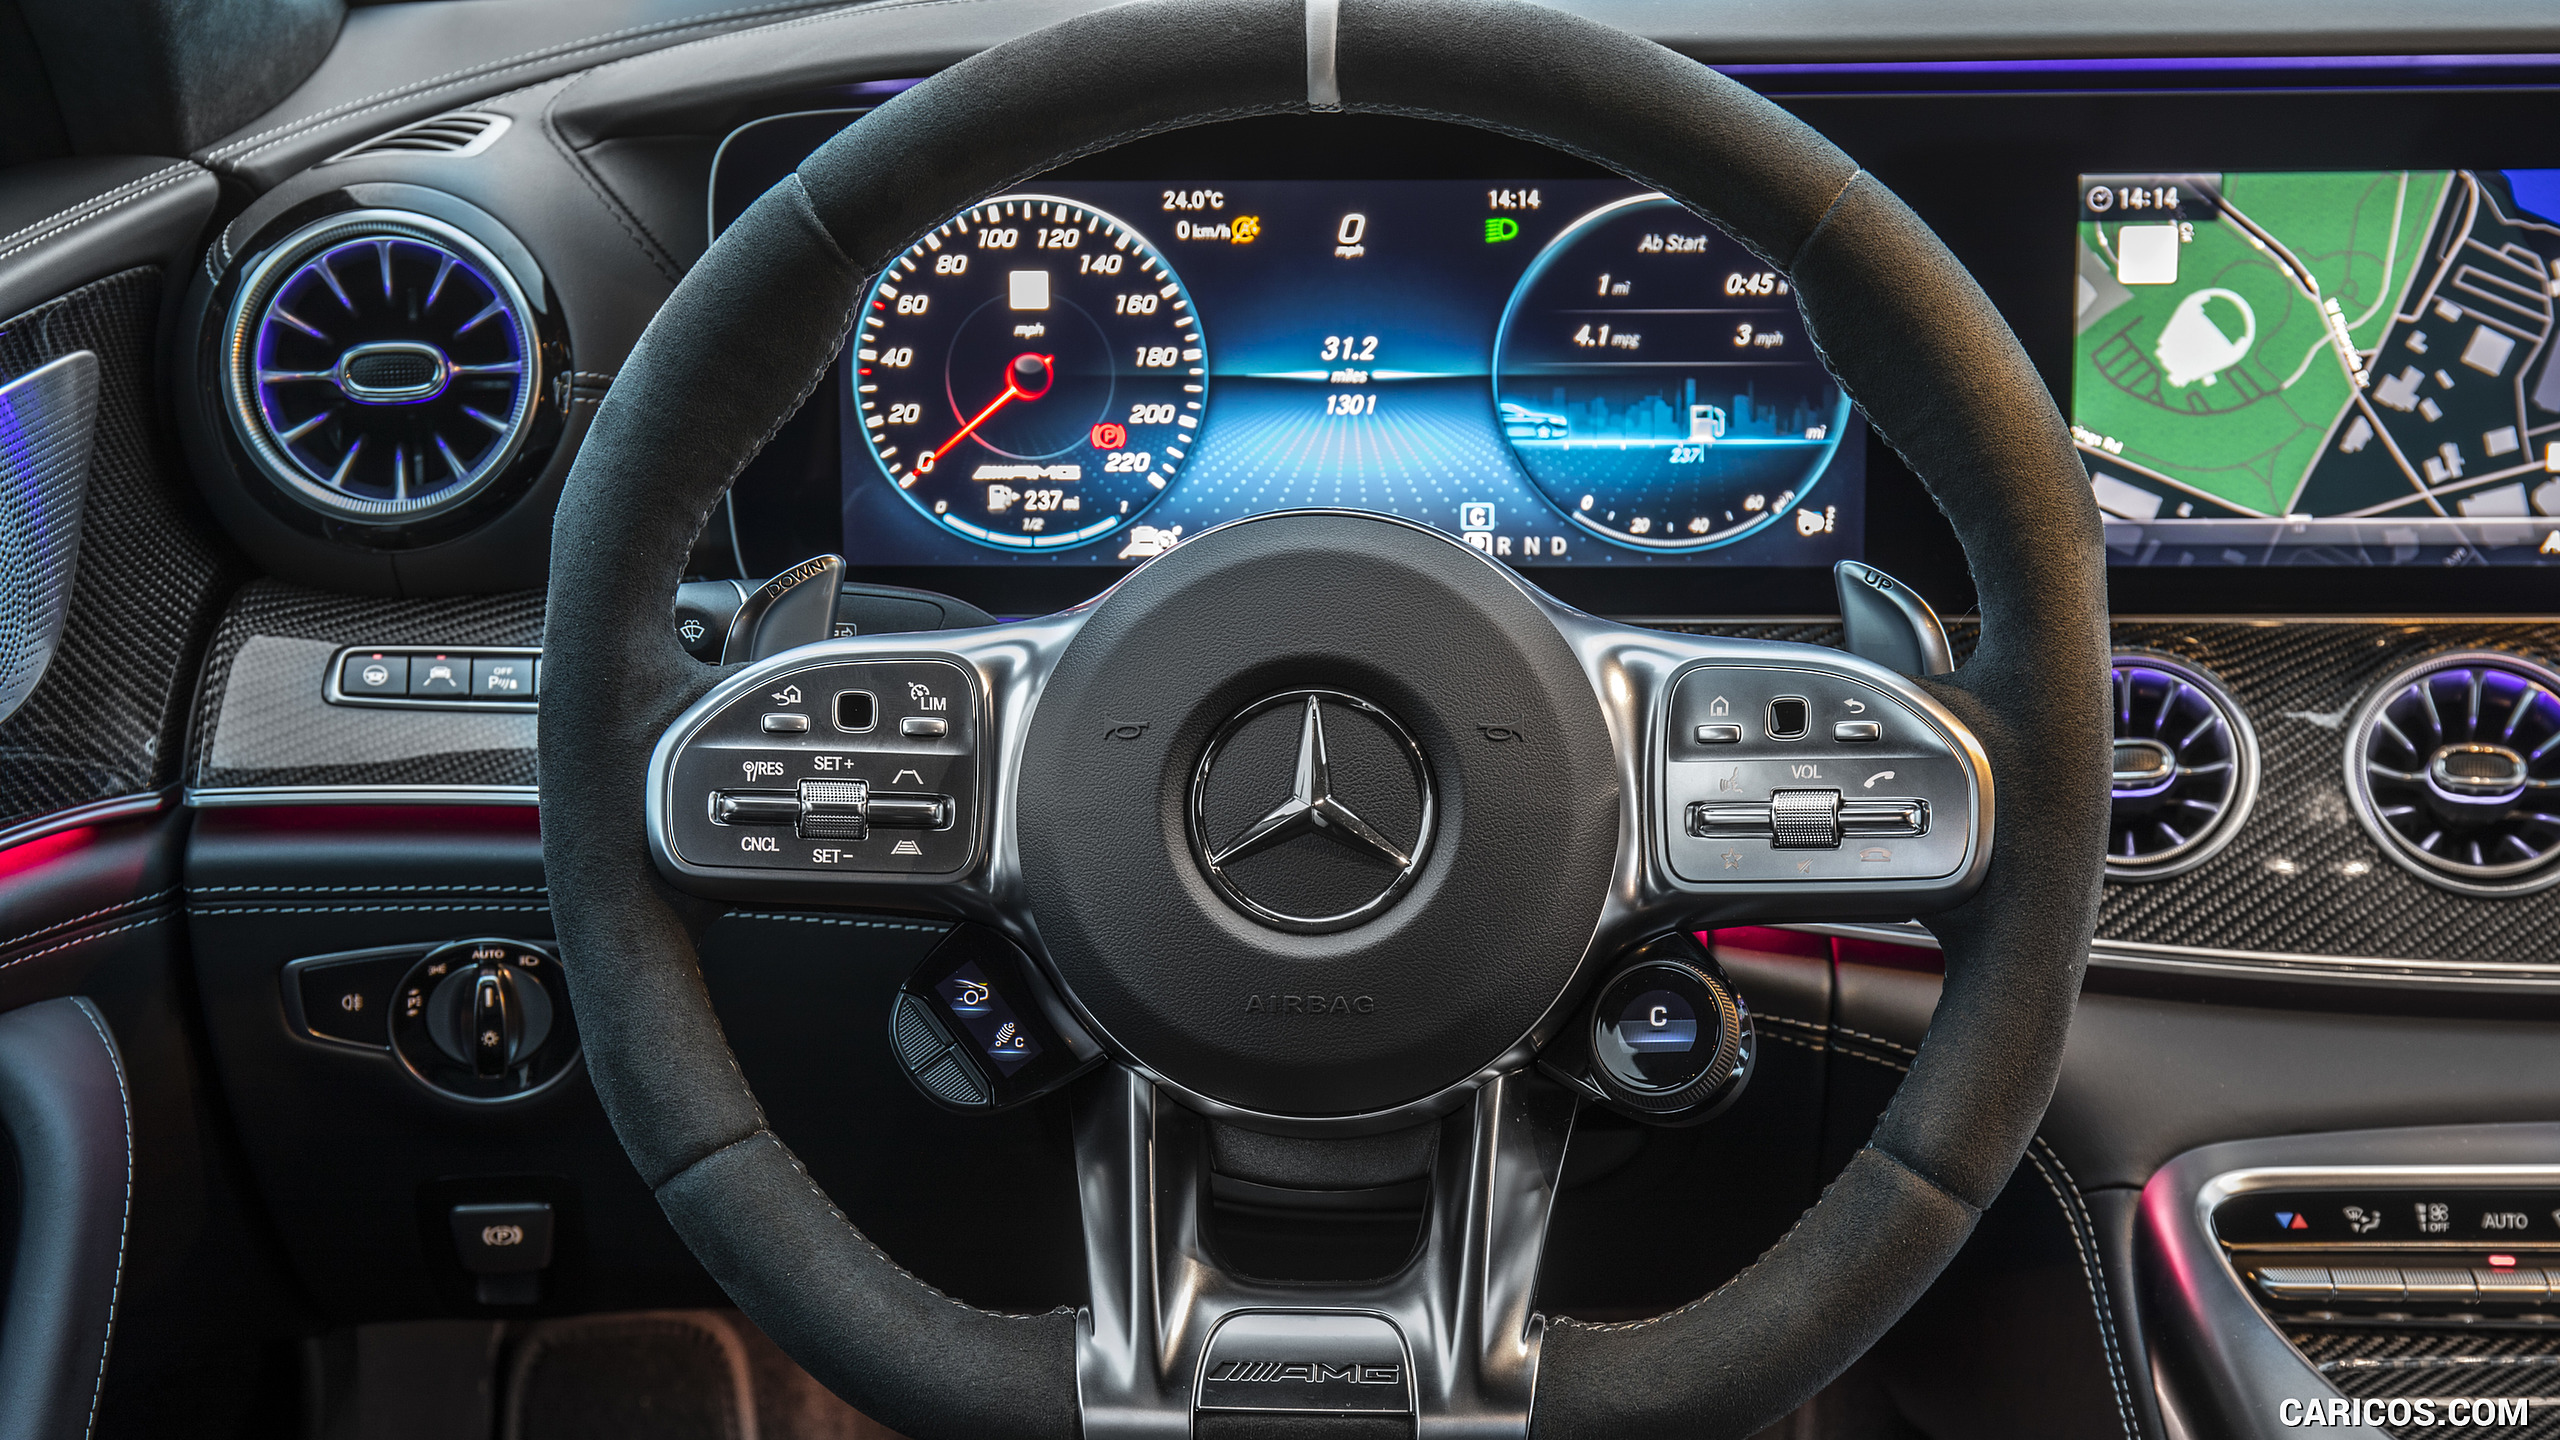 2019 Mercedes-AMG GT 63 S 4MATIC+ 4-Door Coupe - Interior, Steering Wheel, #162 of 427